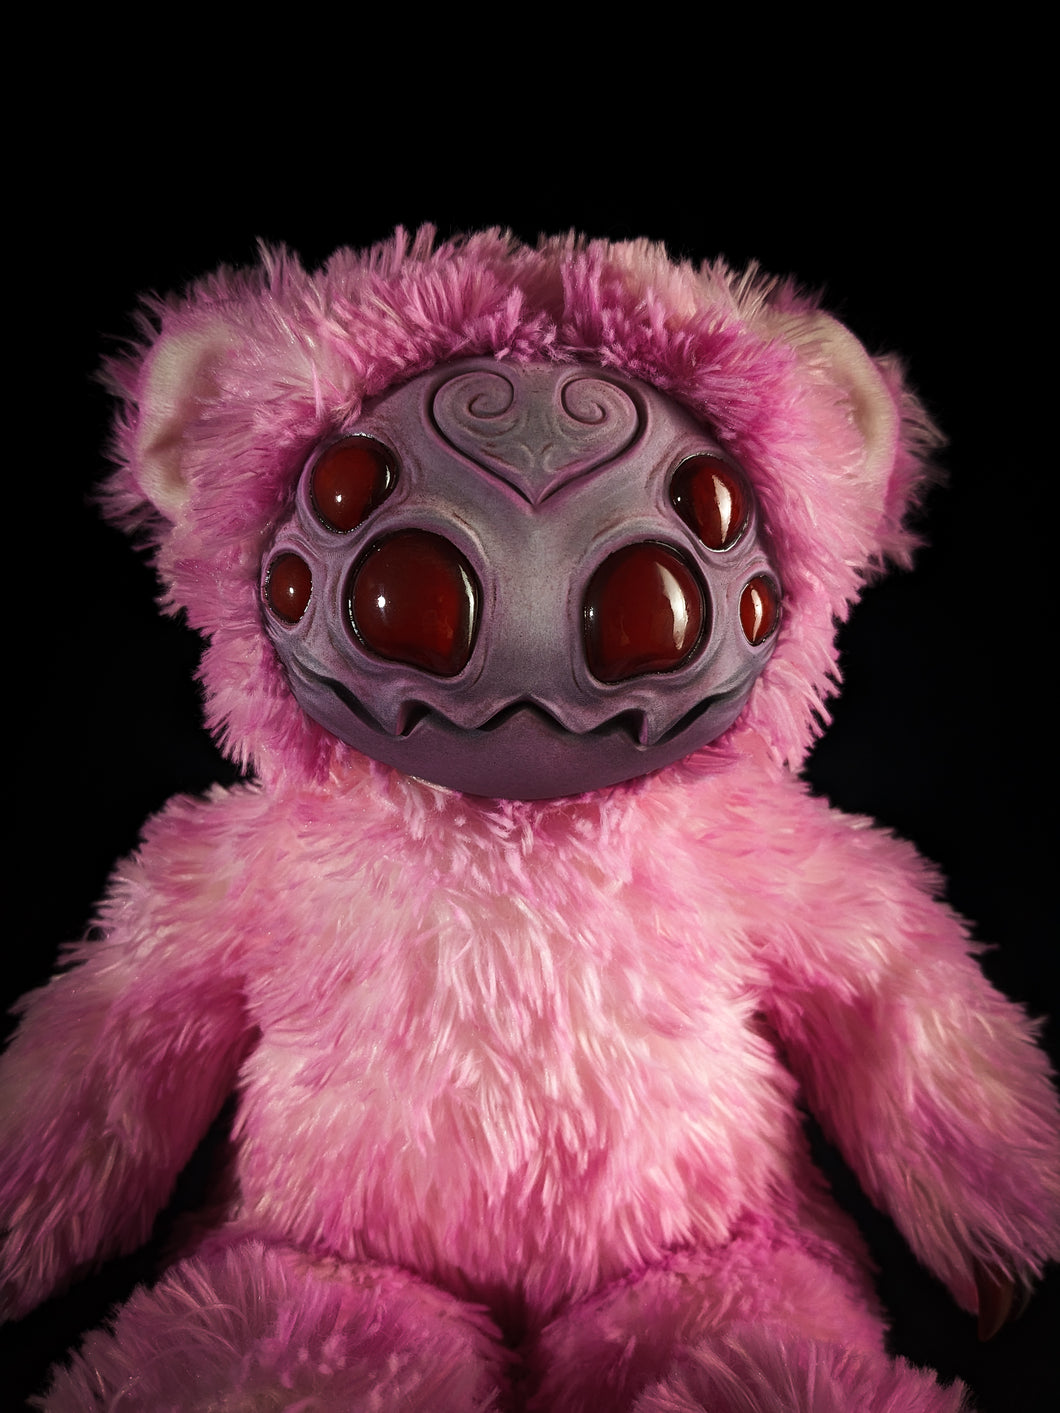 Arakobe (Creepy Floss Ver.) - Monster Art Doll Plush Toy